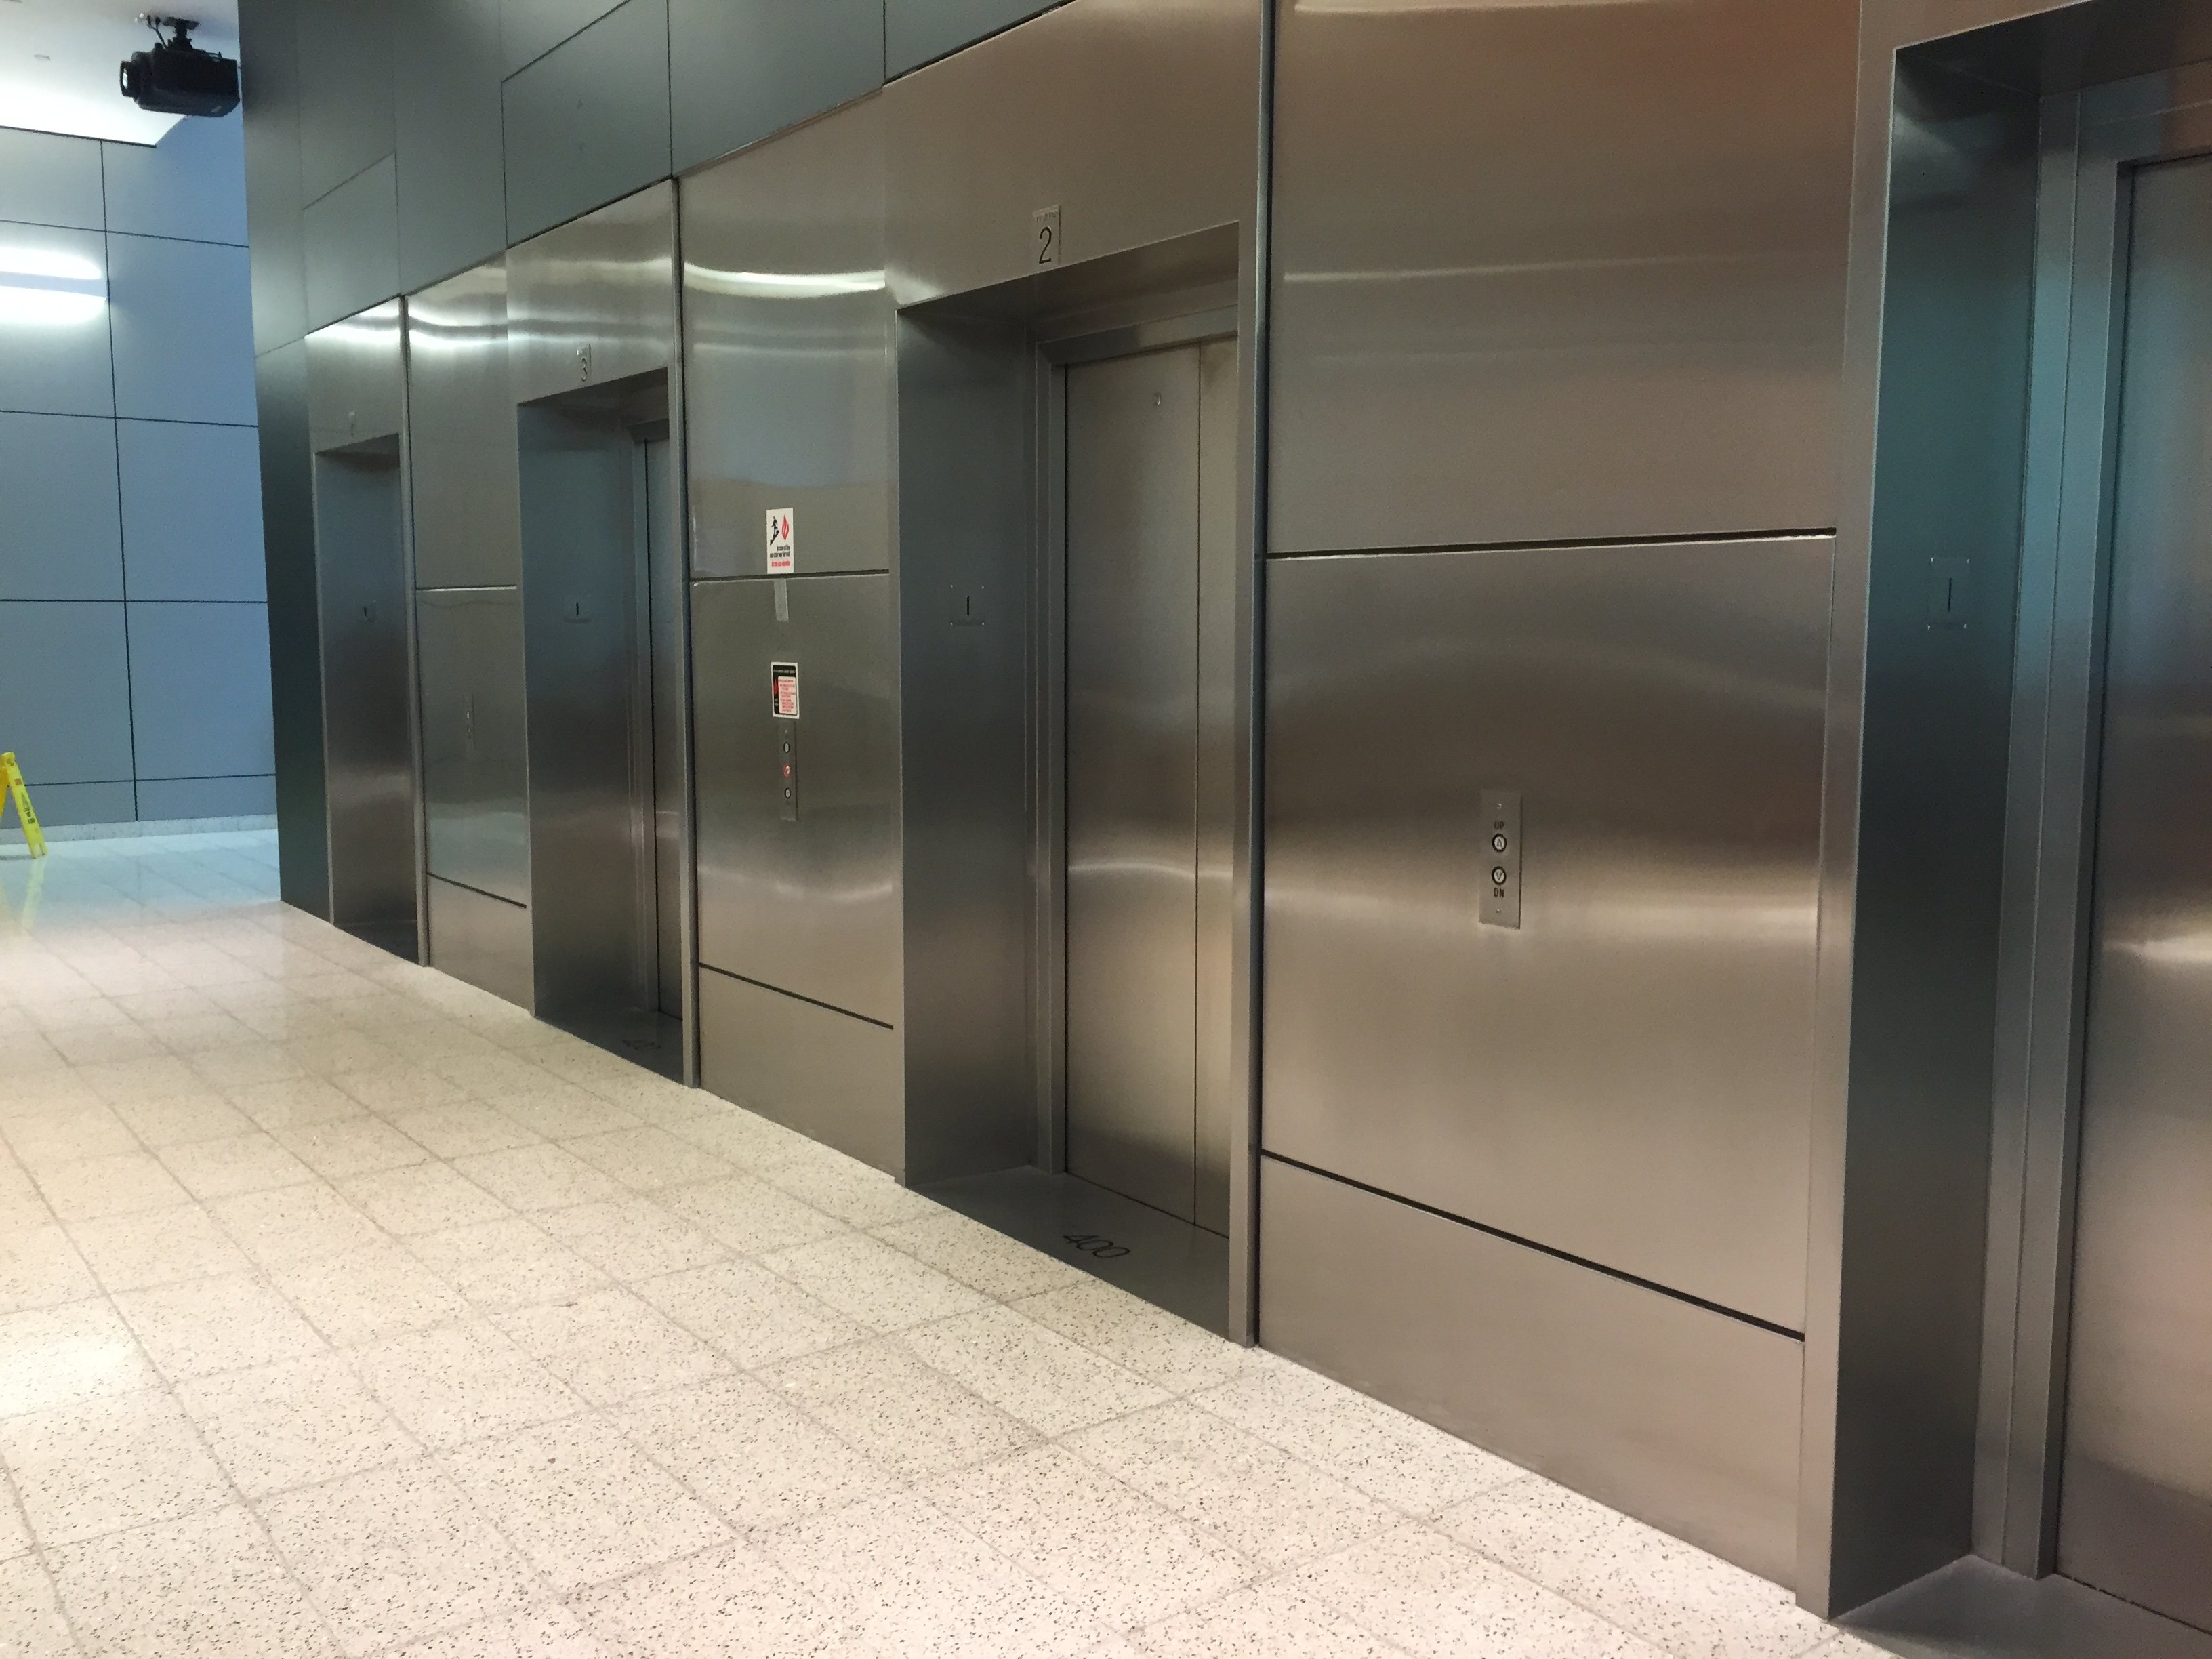 some elevators